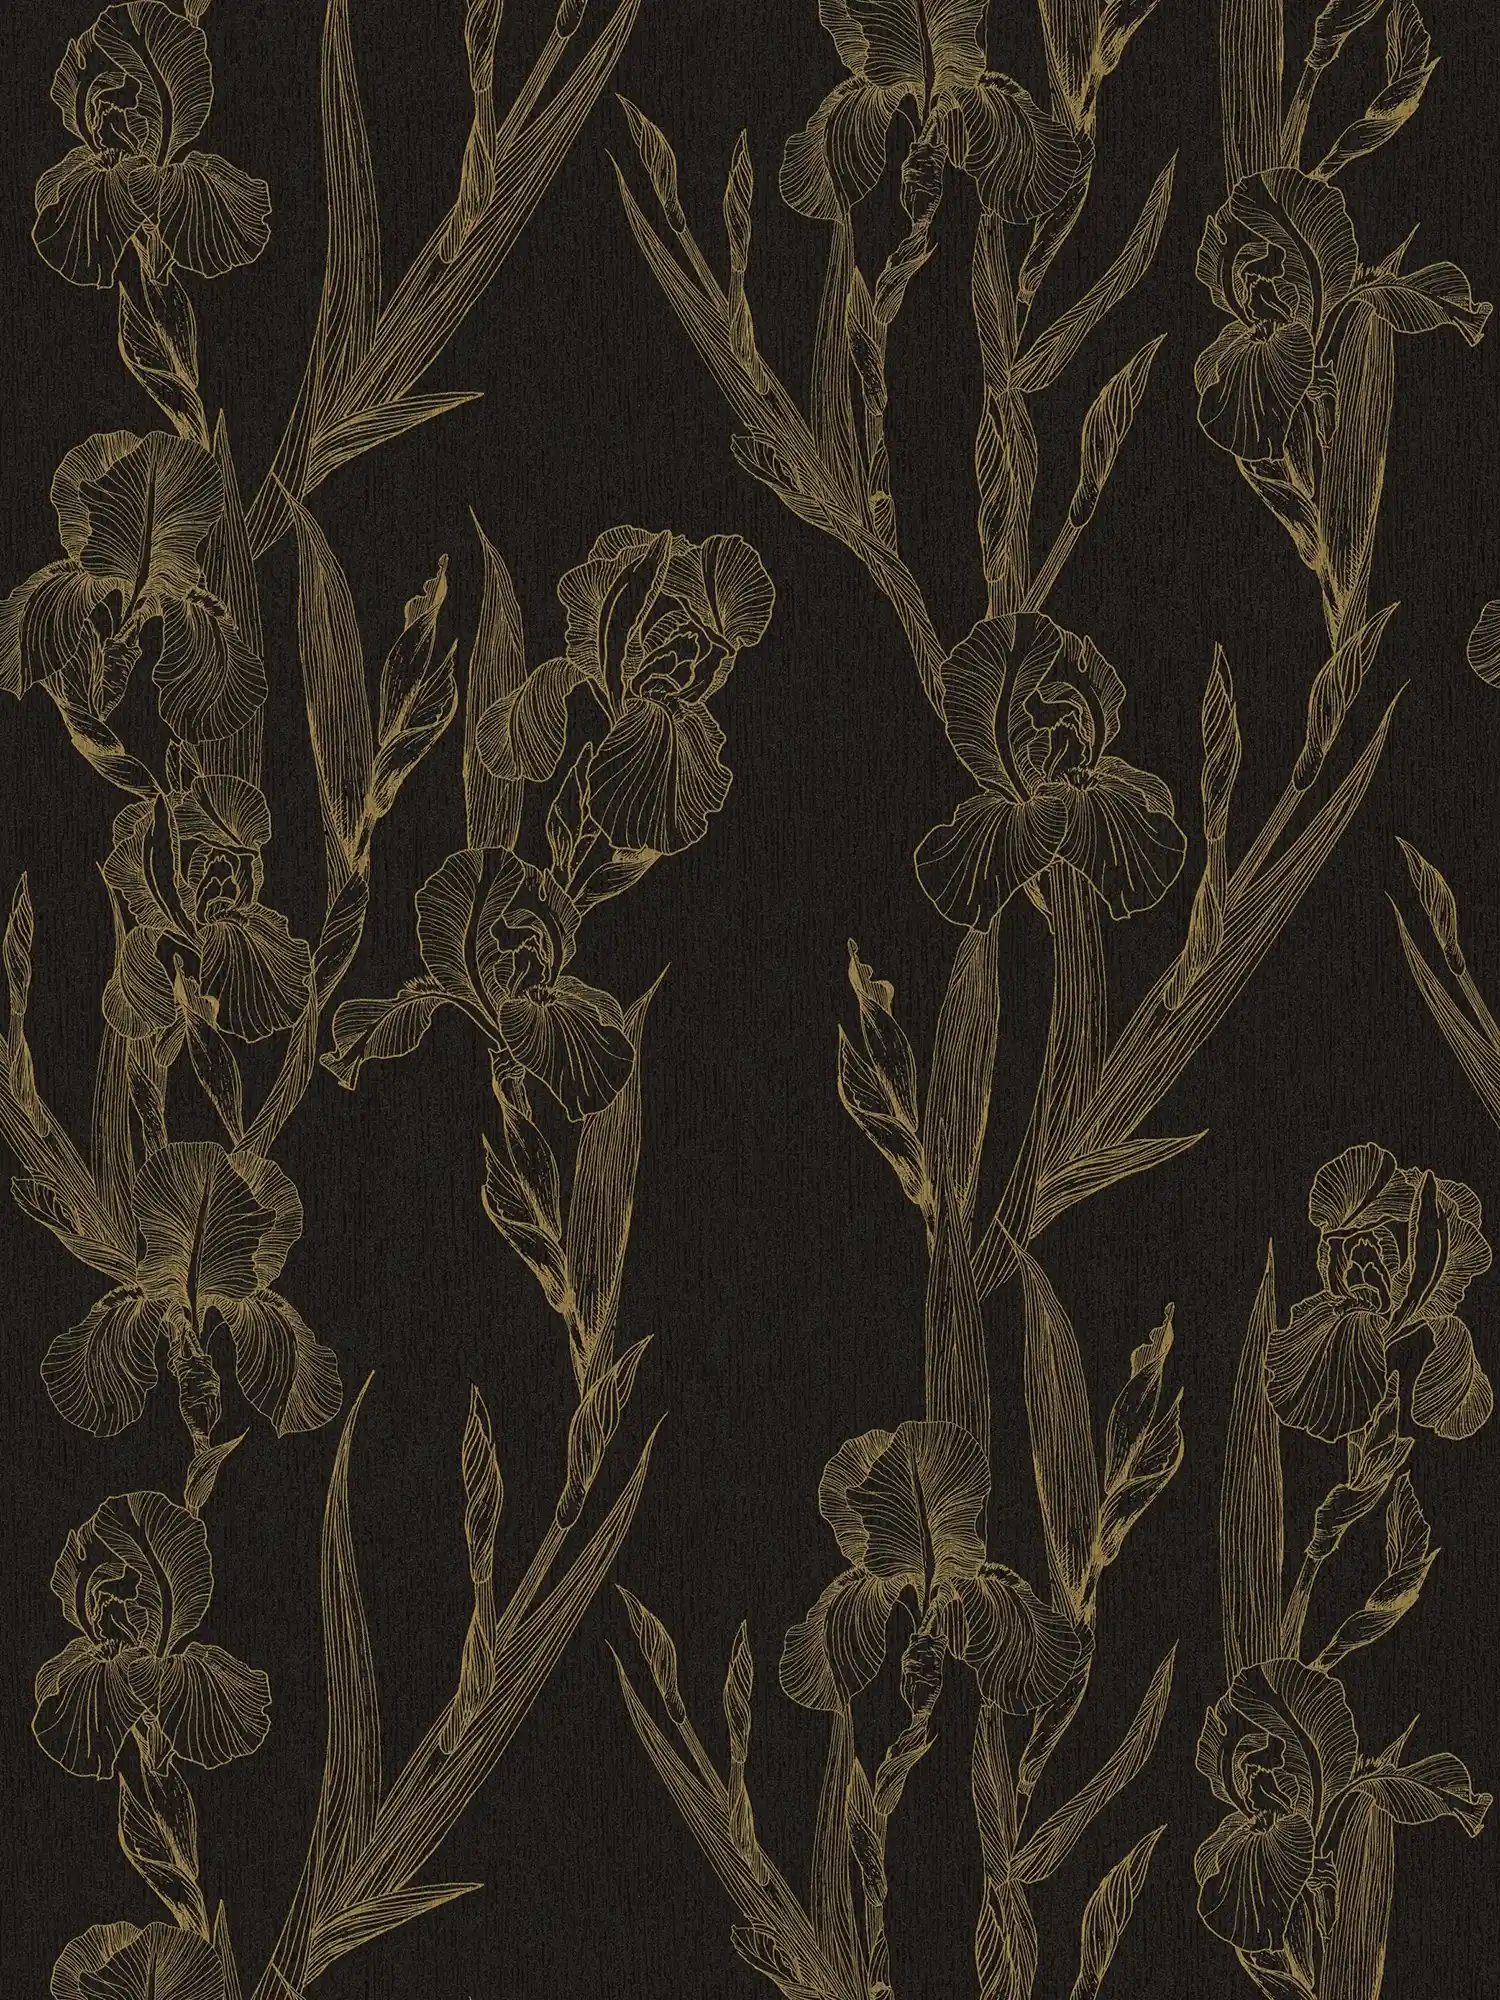         Bloemenpatroon behang met bloesems in tekenstijl - zwart, geel
    